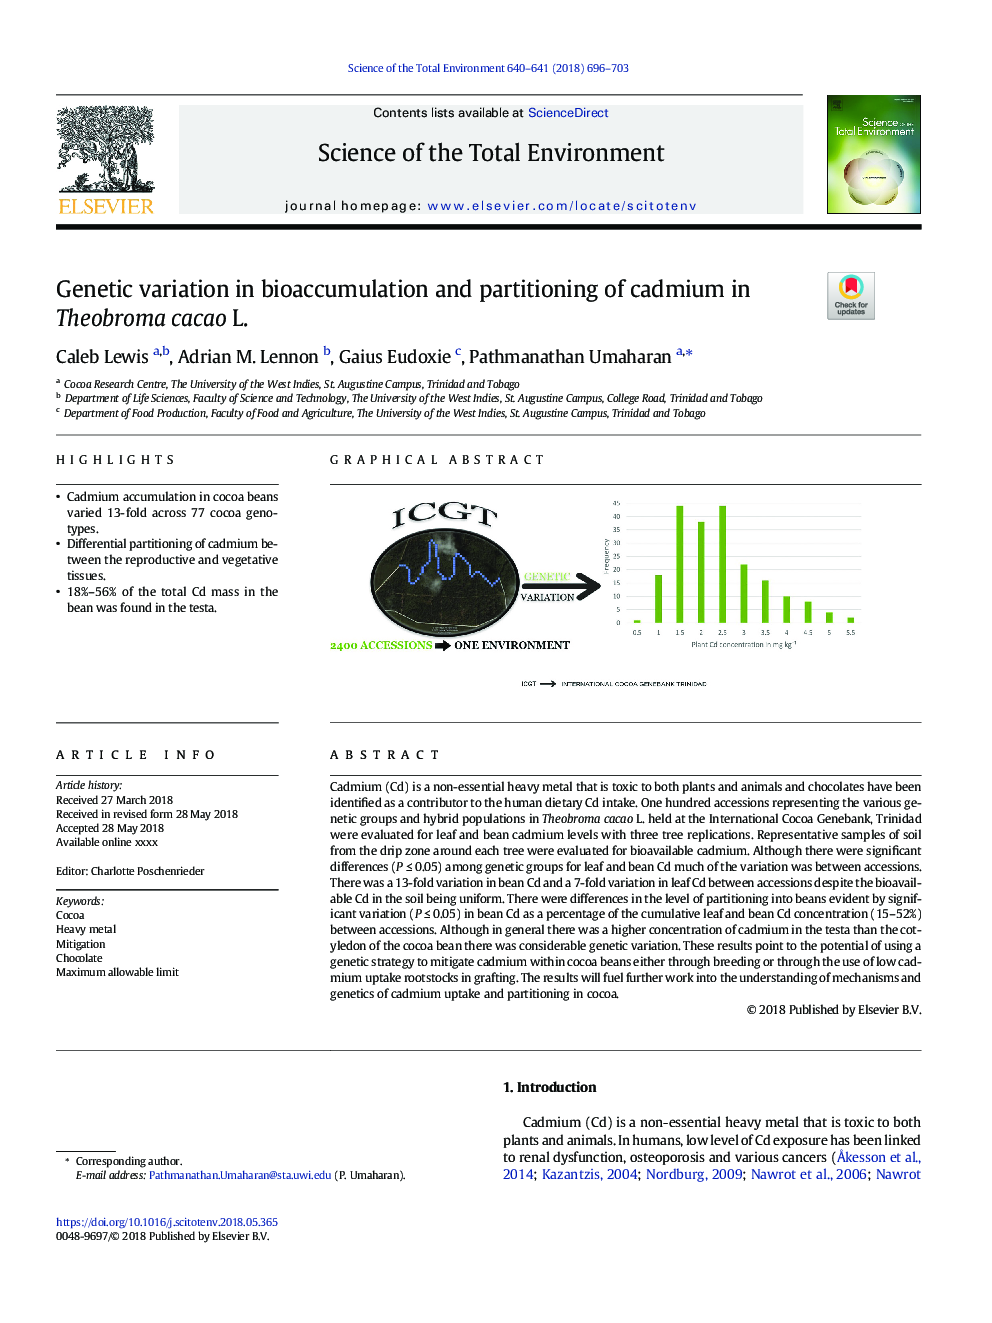 تنوع ژنتیکی در ذخیره سازی زیستی و پراکندگی کادمیوم در تئوبروما کاکائو ل 